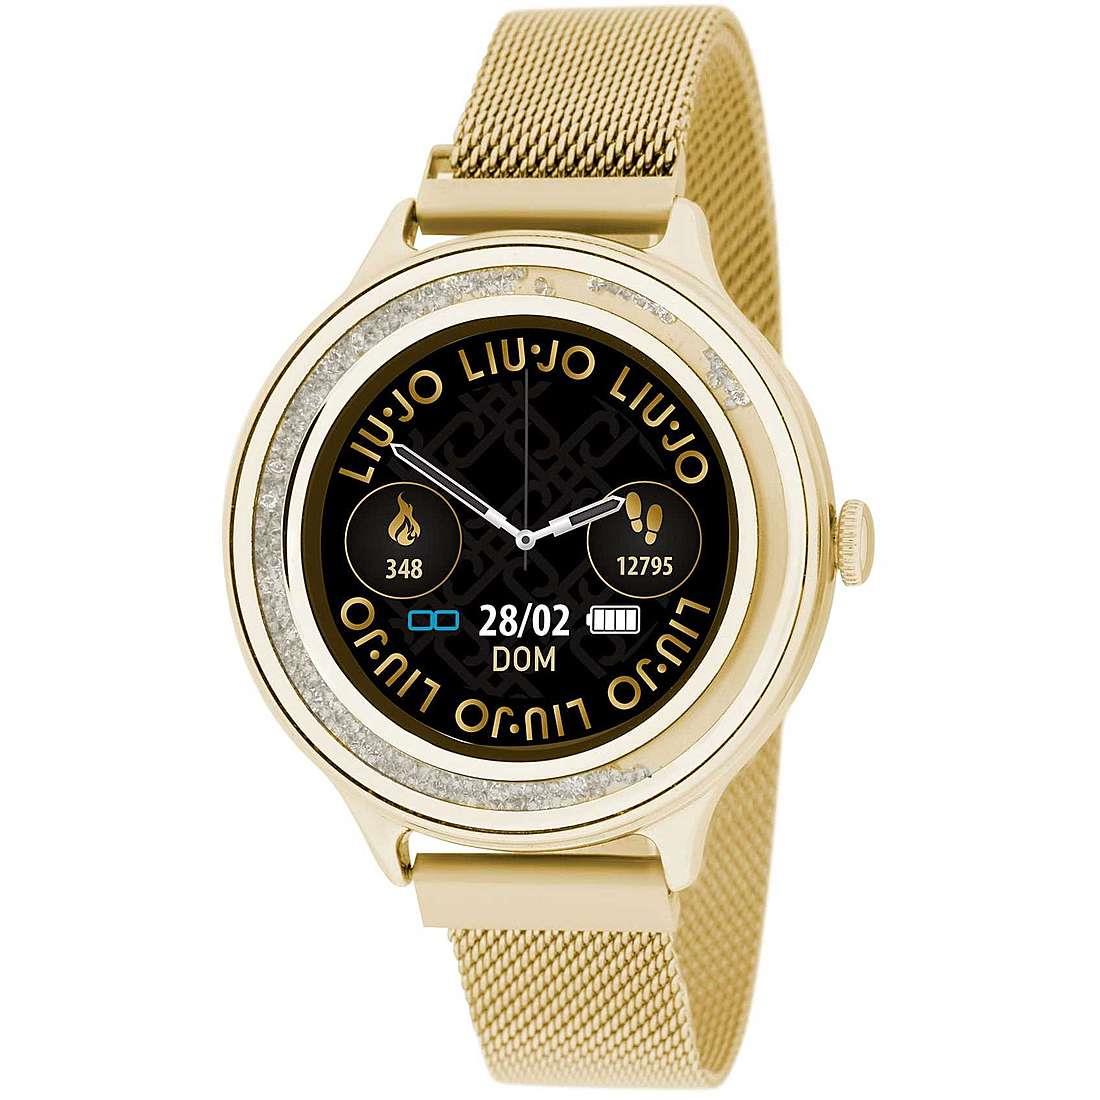 Orologio Smartwatch Liujo Dancing Gold - LIU-JO